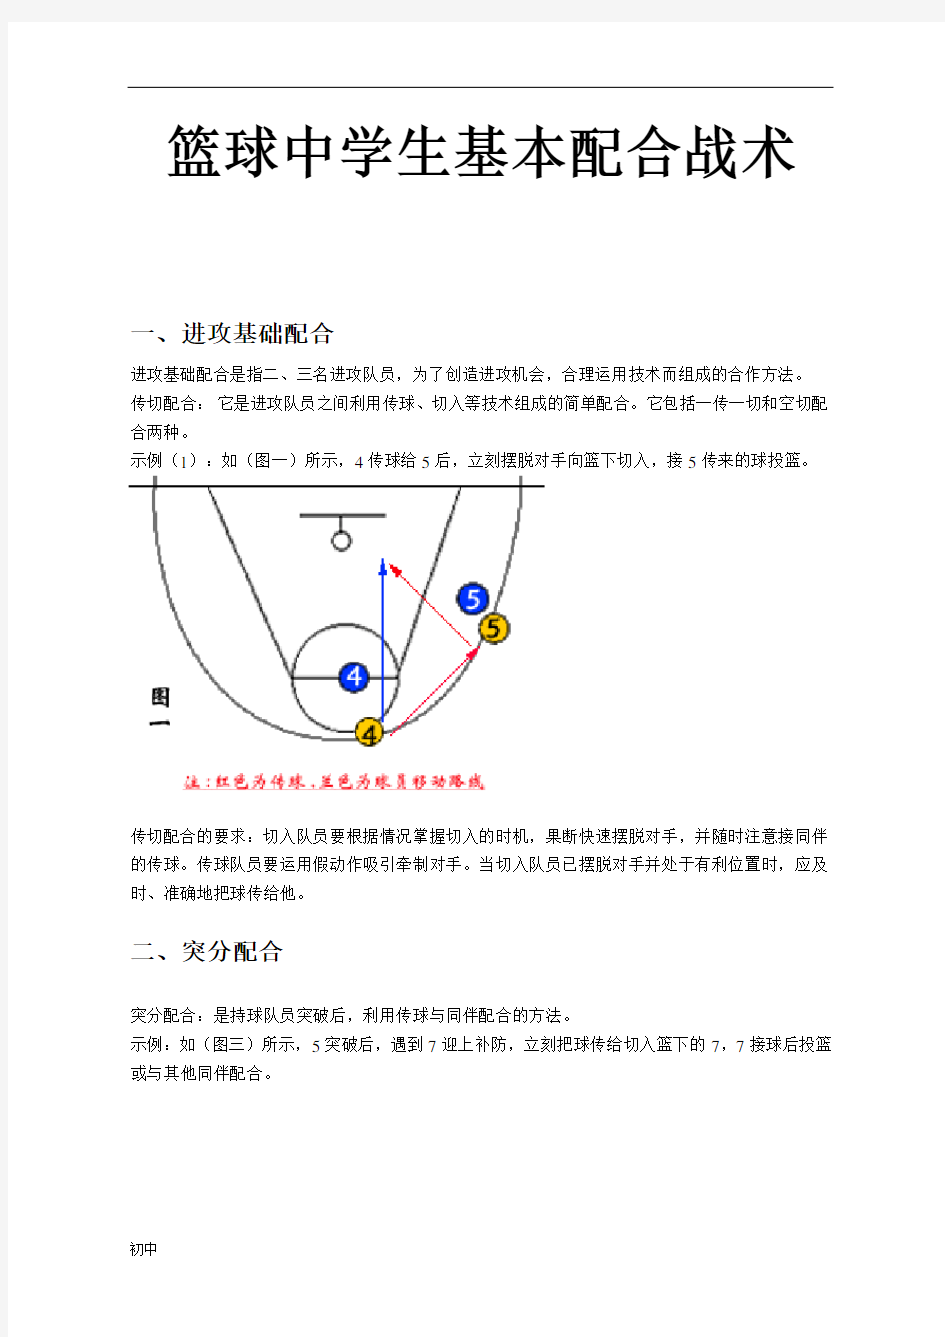 初级中学篮球基本战术(带图解).doc